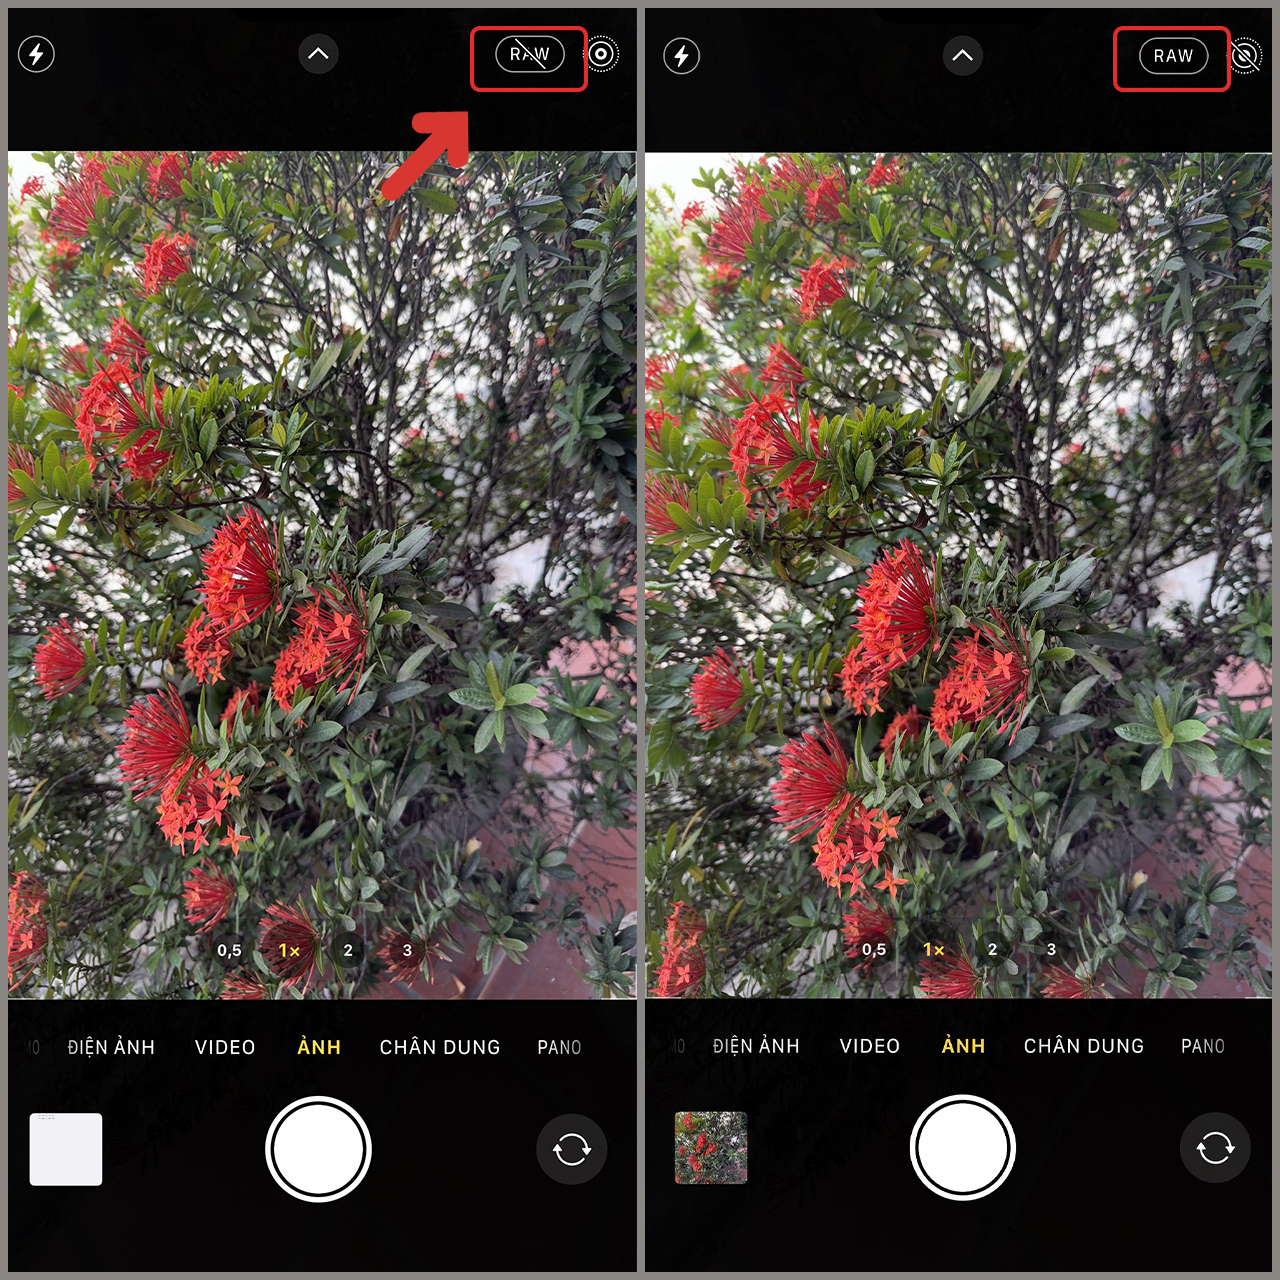 Chân dung, phong cảnh, món ăn - iPhone 14 Pro có thể chụp tất cả với sự chi tiết và sắc nét đến từng pixel. Hãy xem ảnh chụp bởi chiếc điện thoại này và trải nghiệm sự khác biệt!